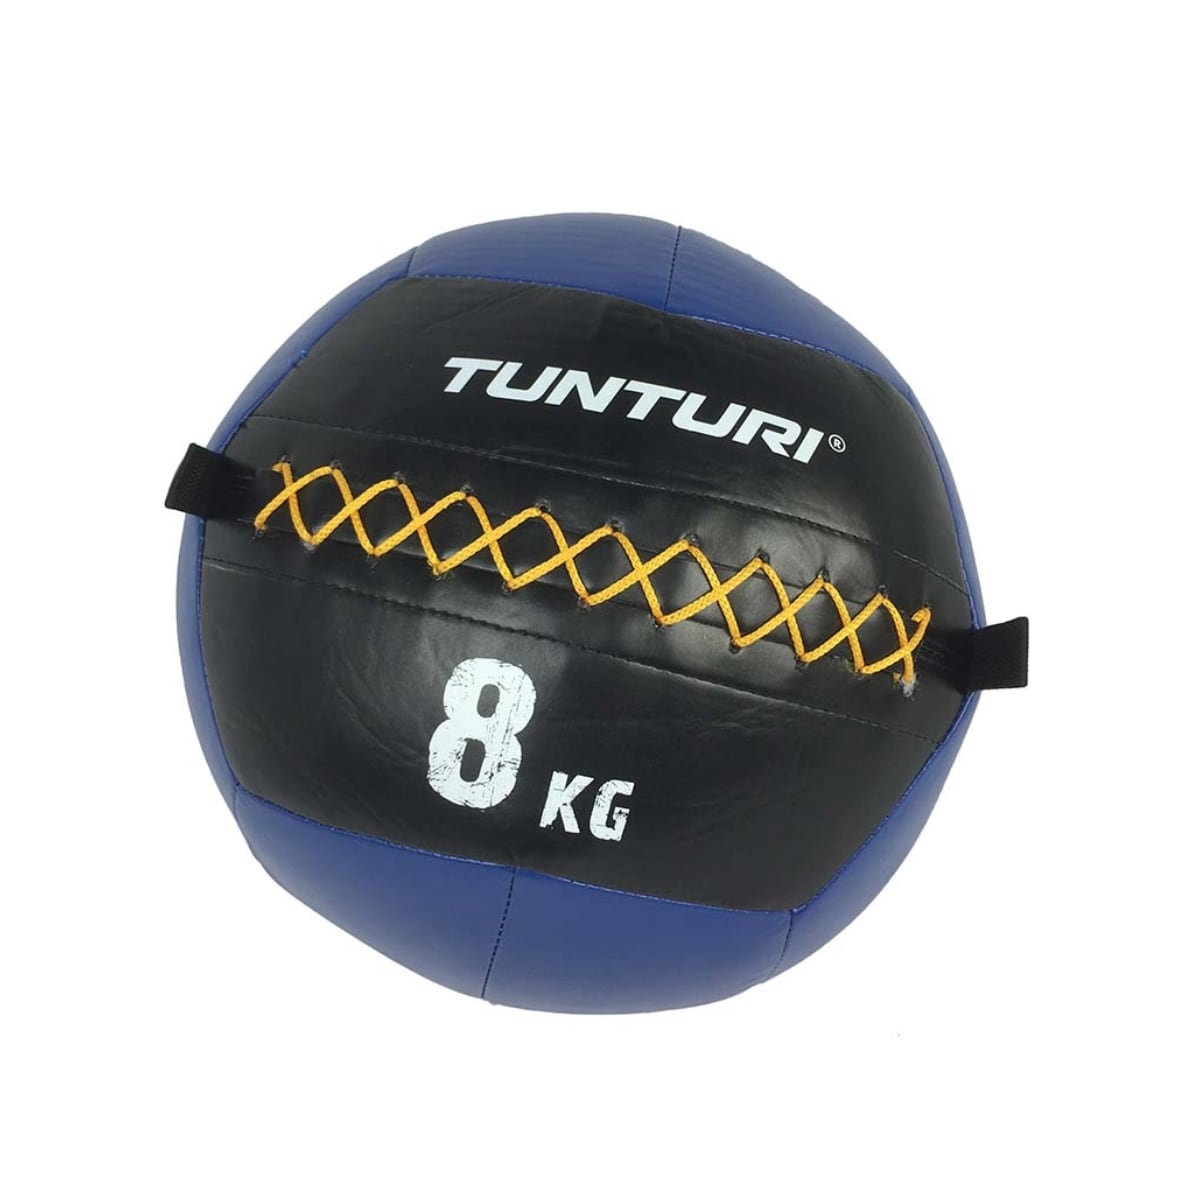 Brug Tunturi Wall Ball 8 kg til en forbedret oplevelse